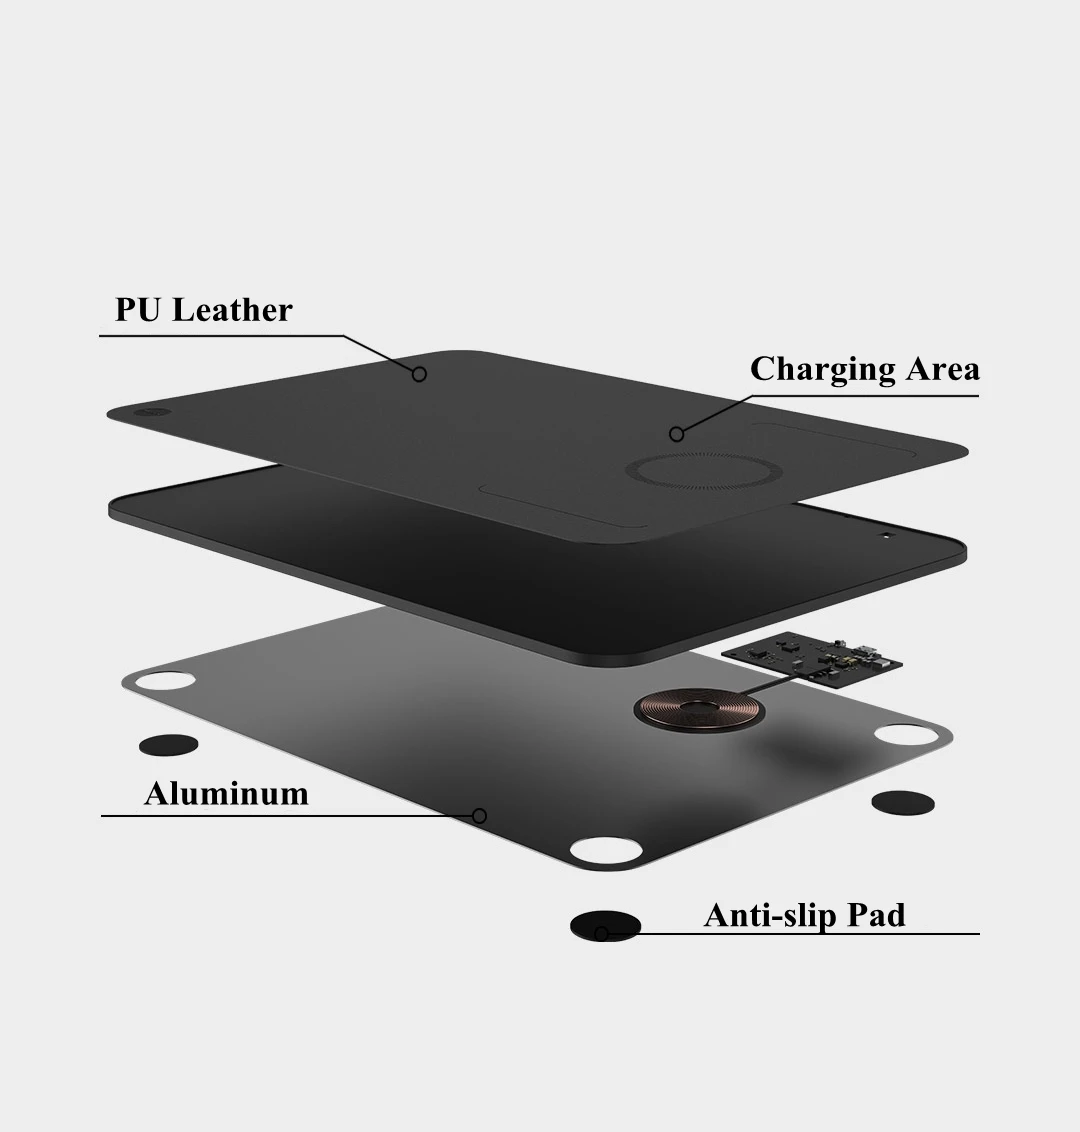 Xiaomi MIIIW беспроводной зарядный коврик для мыши QI искусственная кожа PU поверхность тонкий дизайн для iPhone X XS samsung Xiaomi смартфон